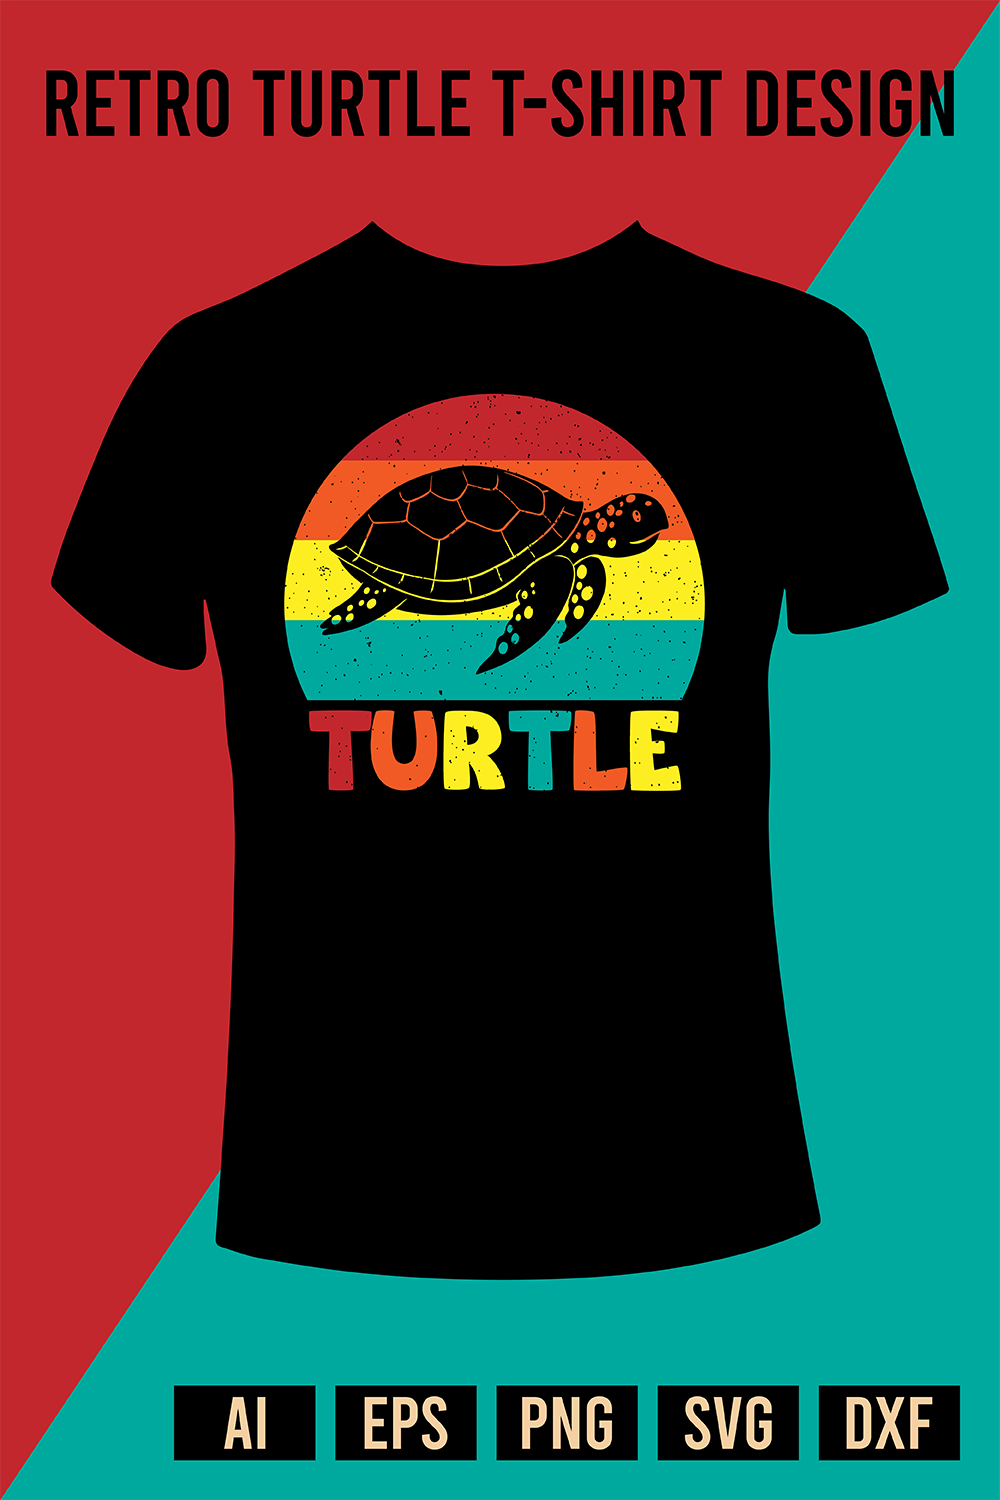 Retro Turtle T-Shirt Design pinterest preview image.